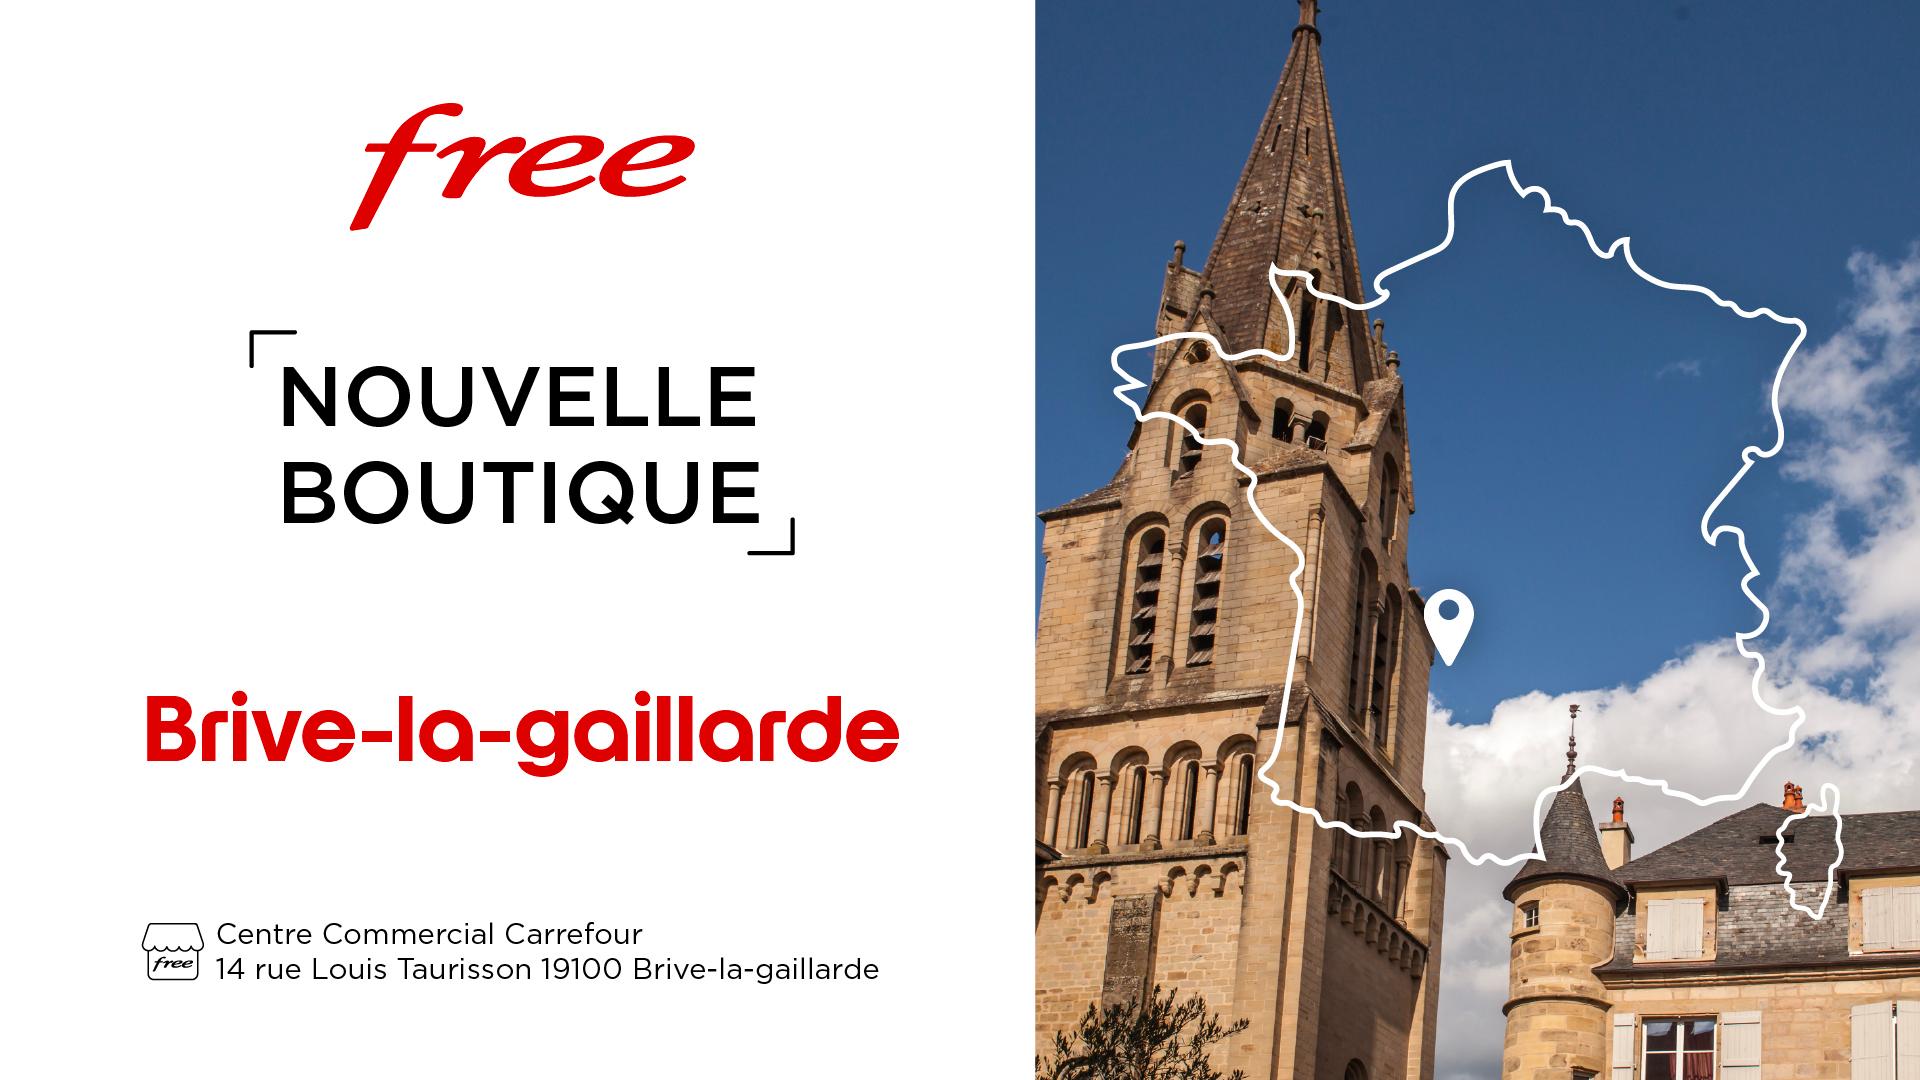 Découvrez la nouvelle boutique Free de Brive-la-Gaillarde